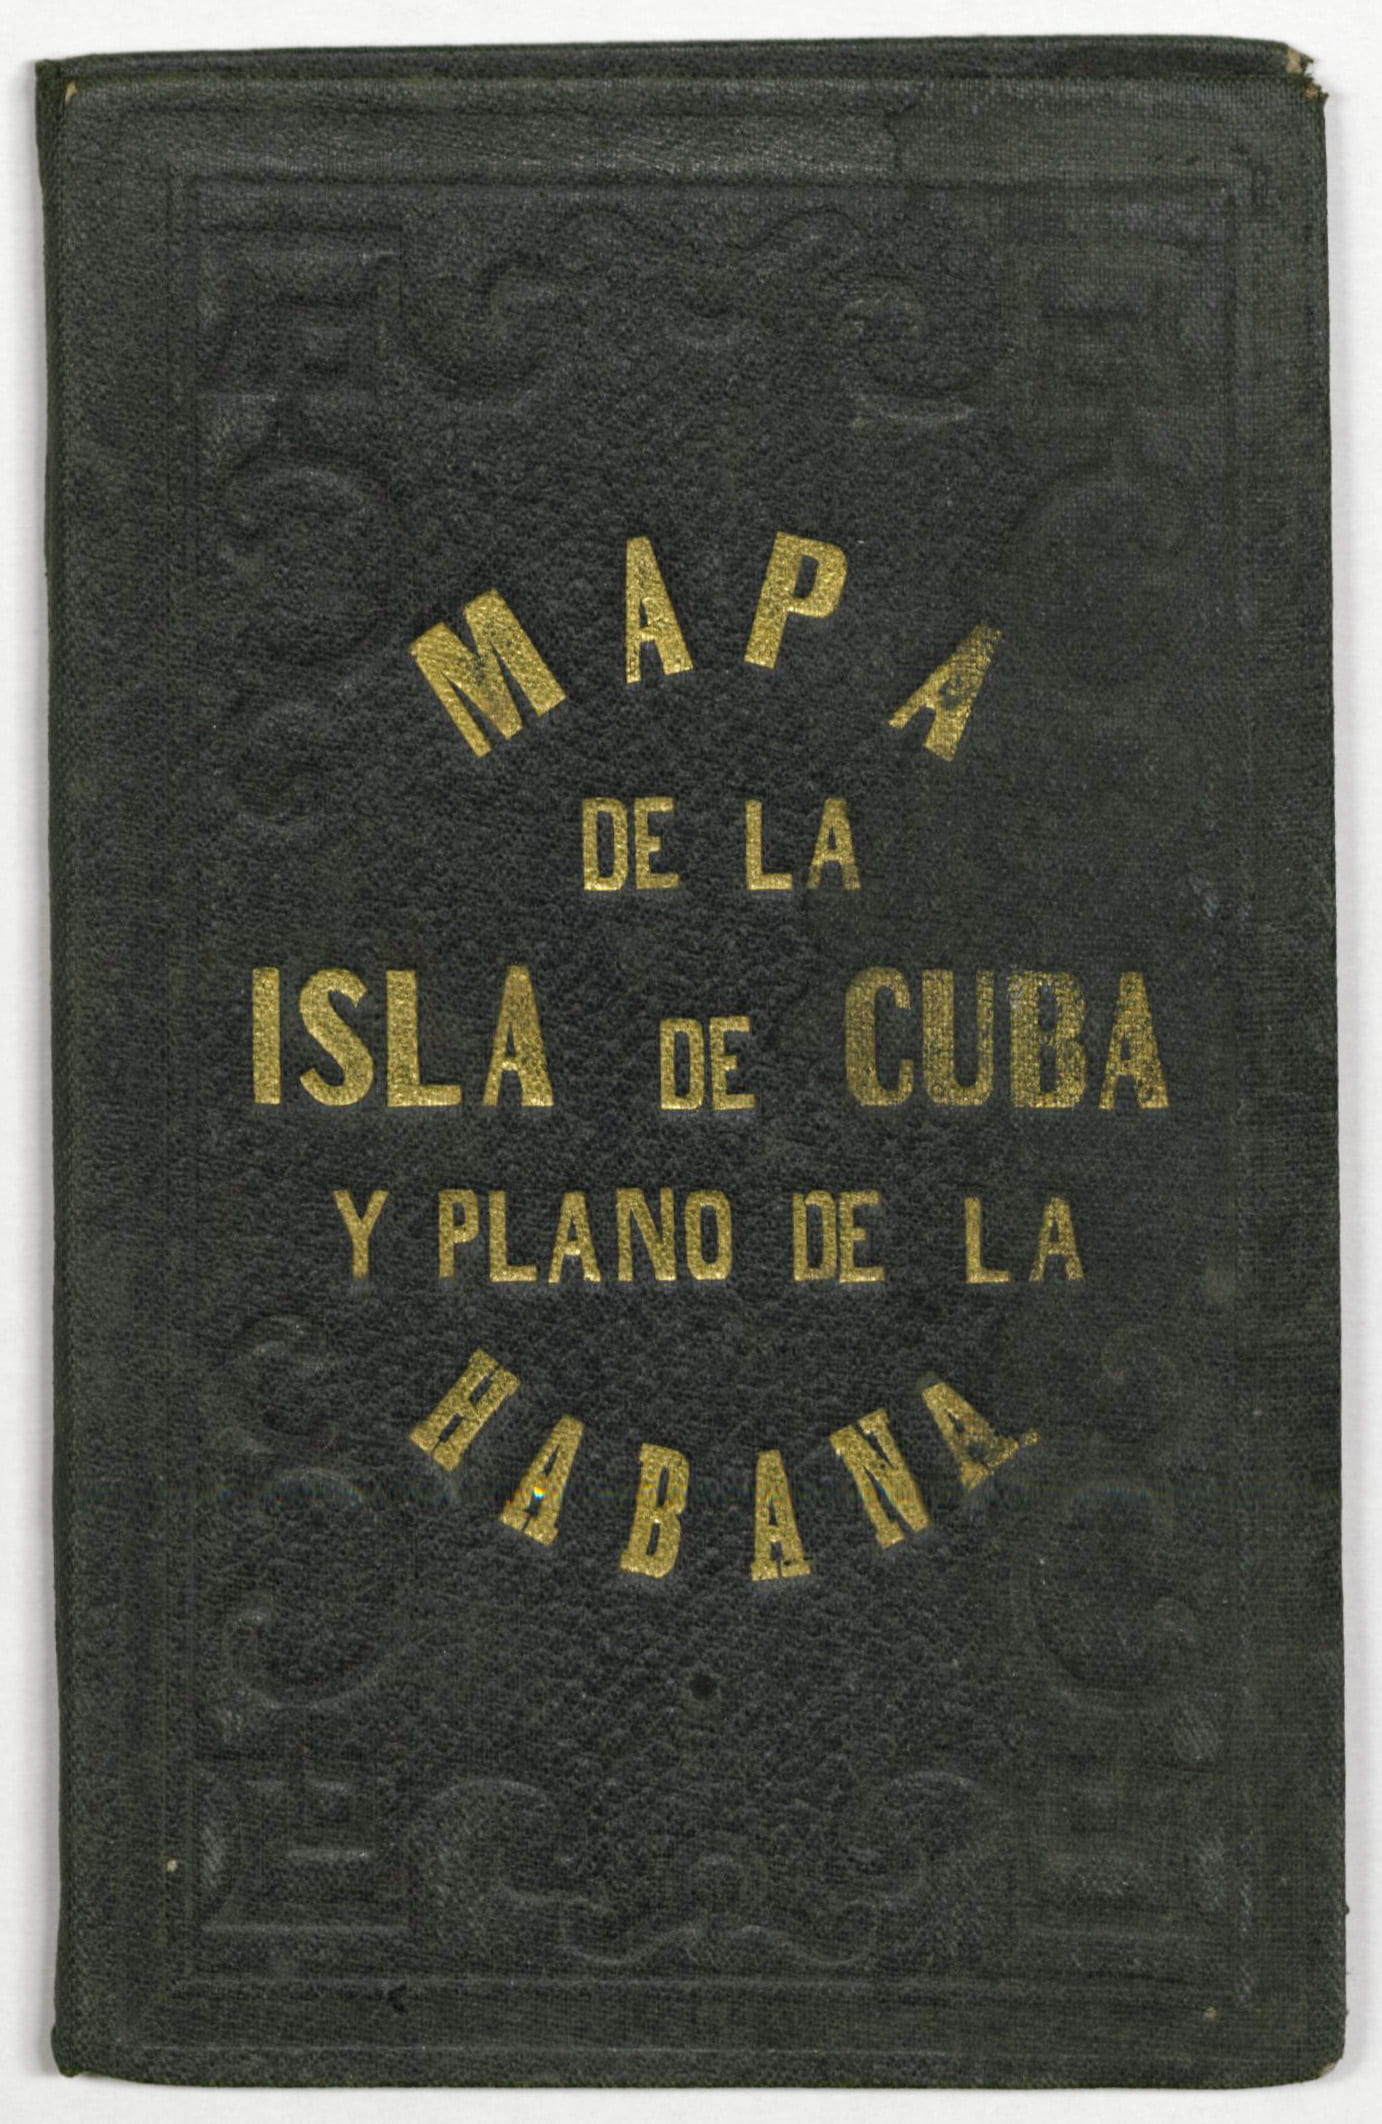 cover of Mapa de la Isla de Cuba y Plano de la Habana